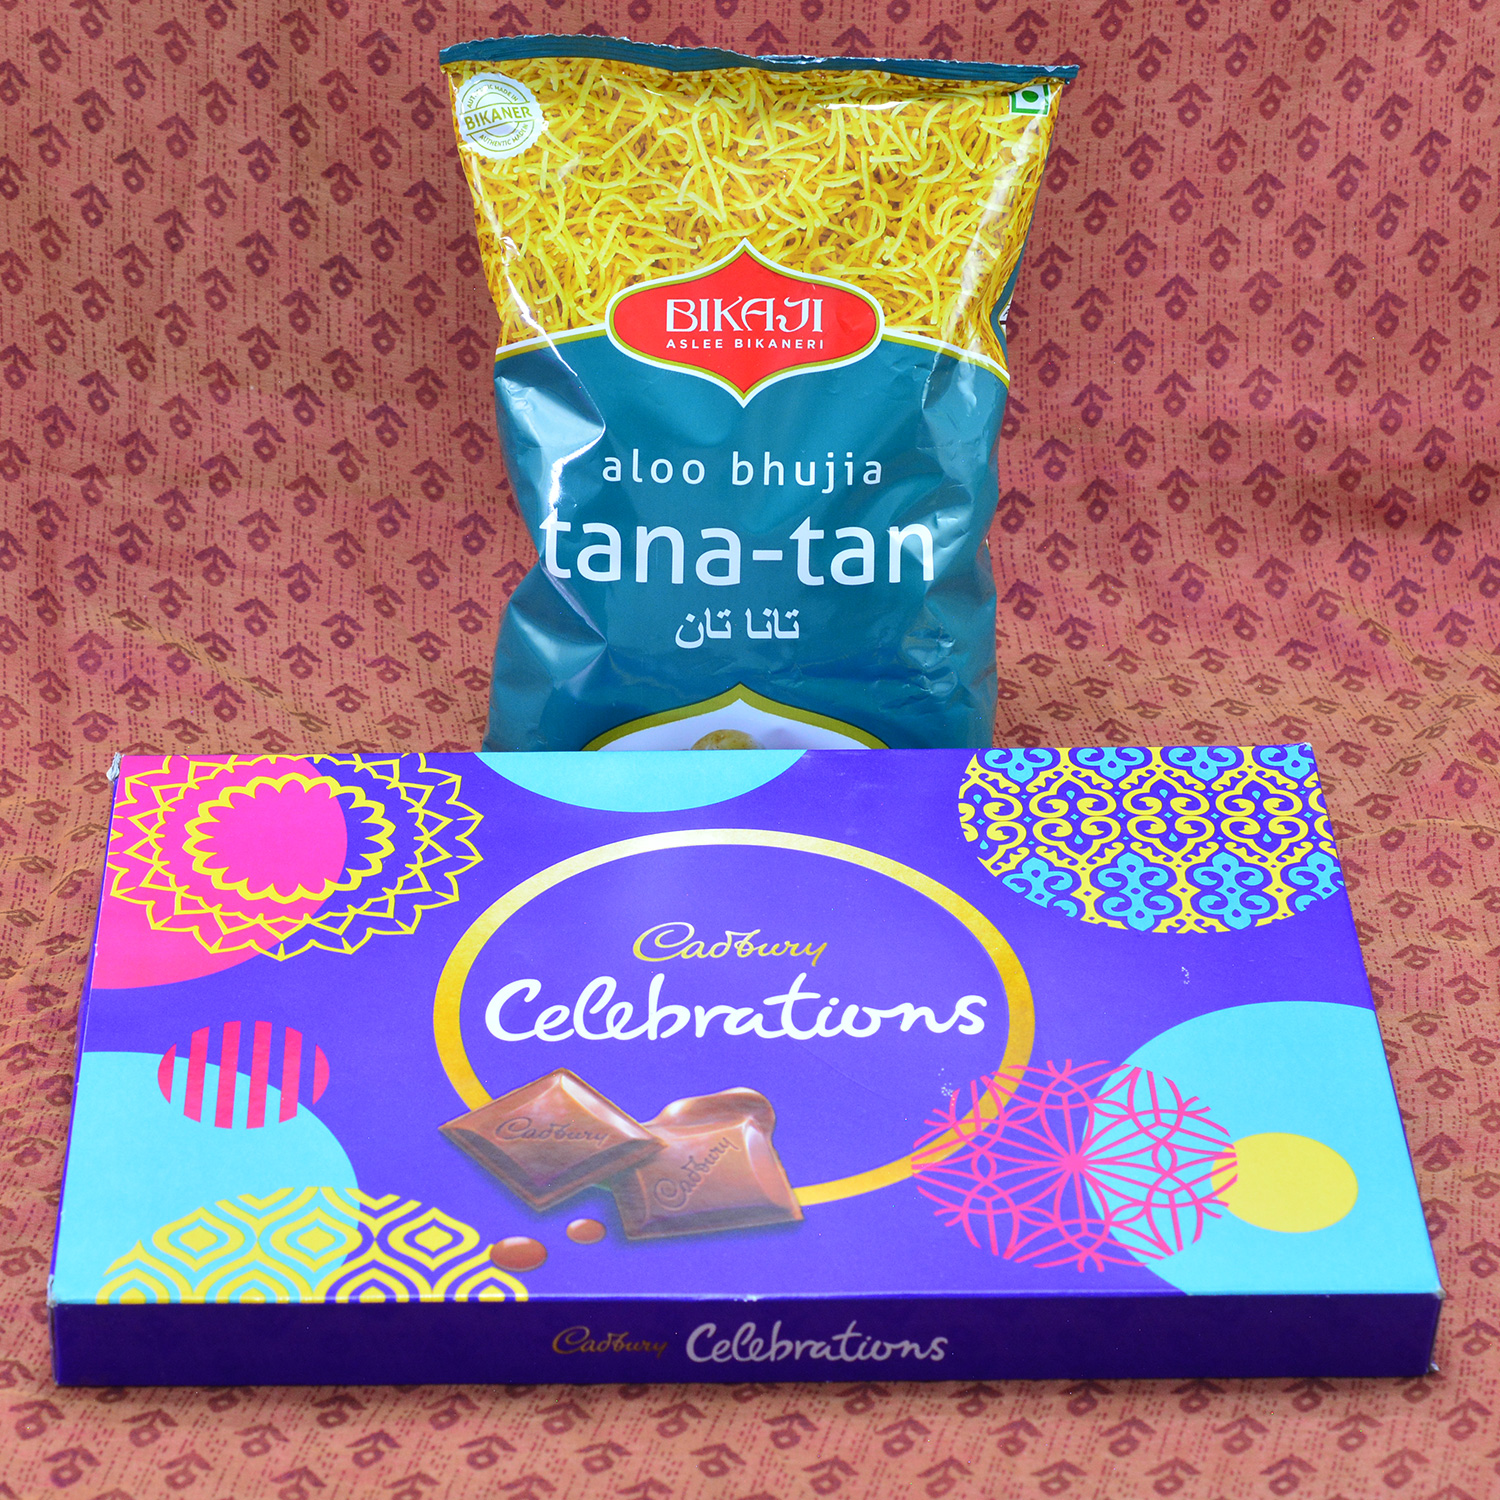 Delicious Cadbury Celebrations with Peppery Bikaji Aloo Bhujia Tana Tan